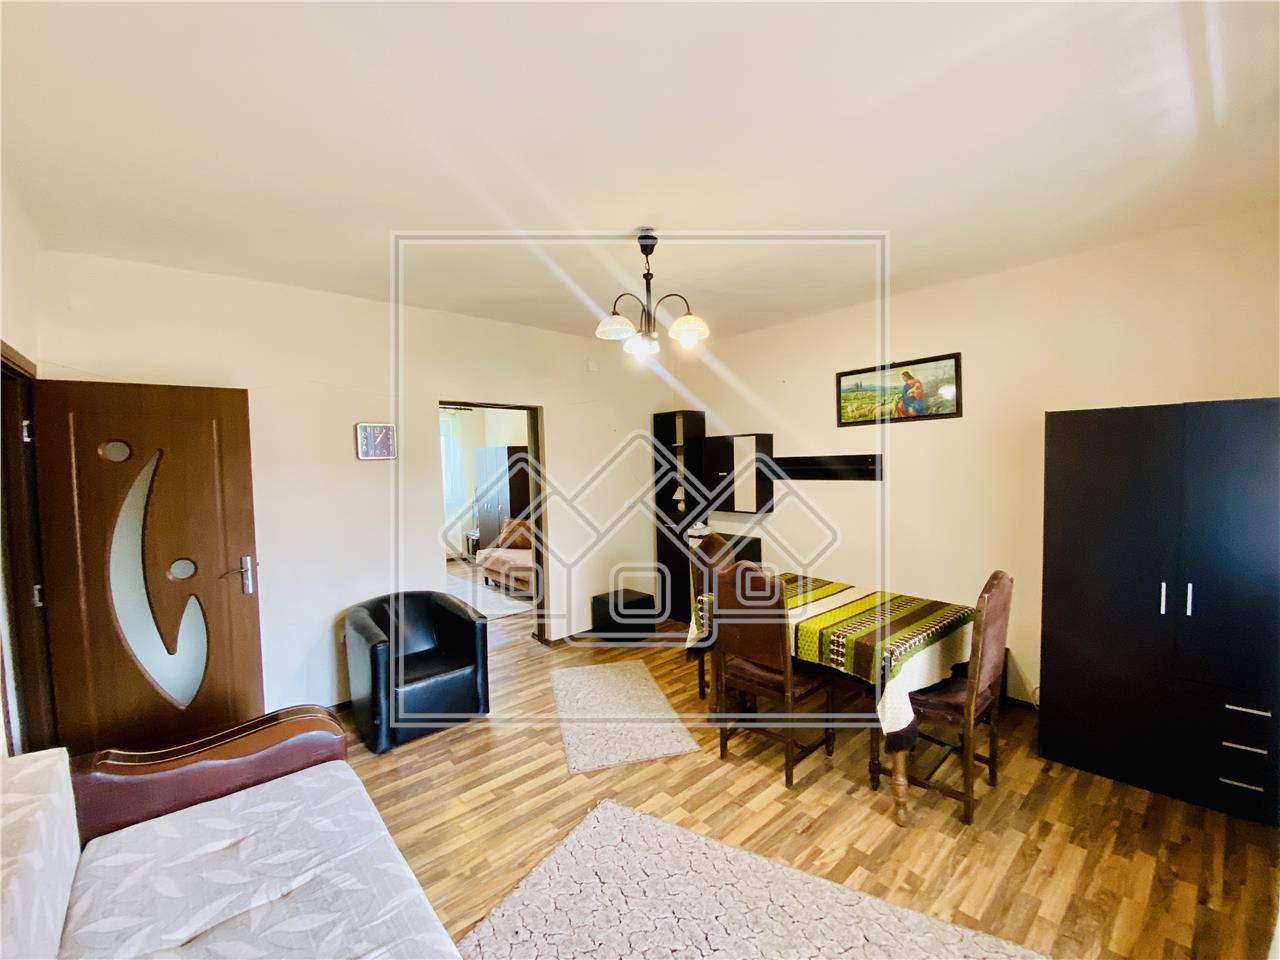 Apartament de vanzare in Sibiu - 2 camere si balcon - zona Terezian